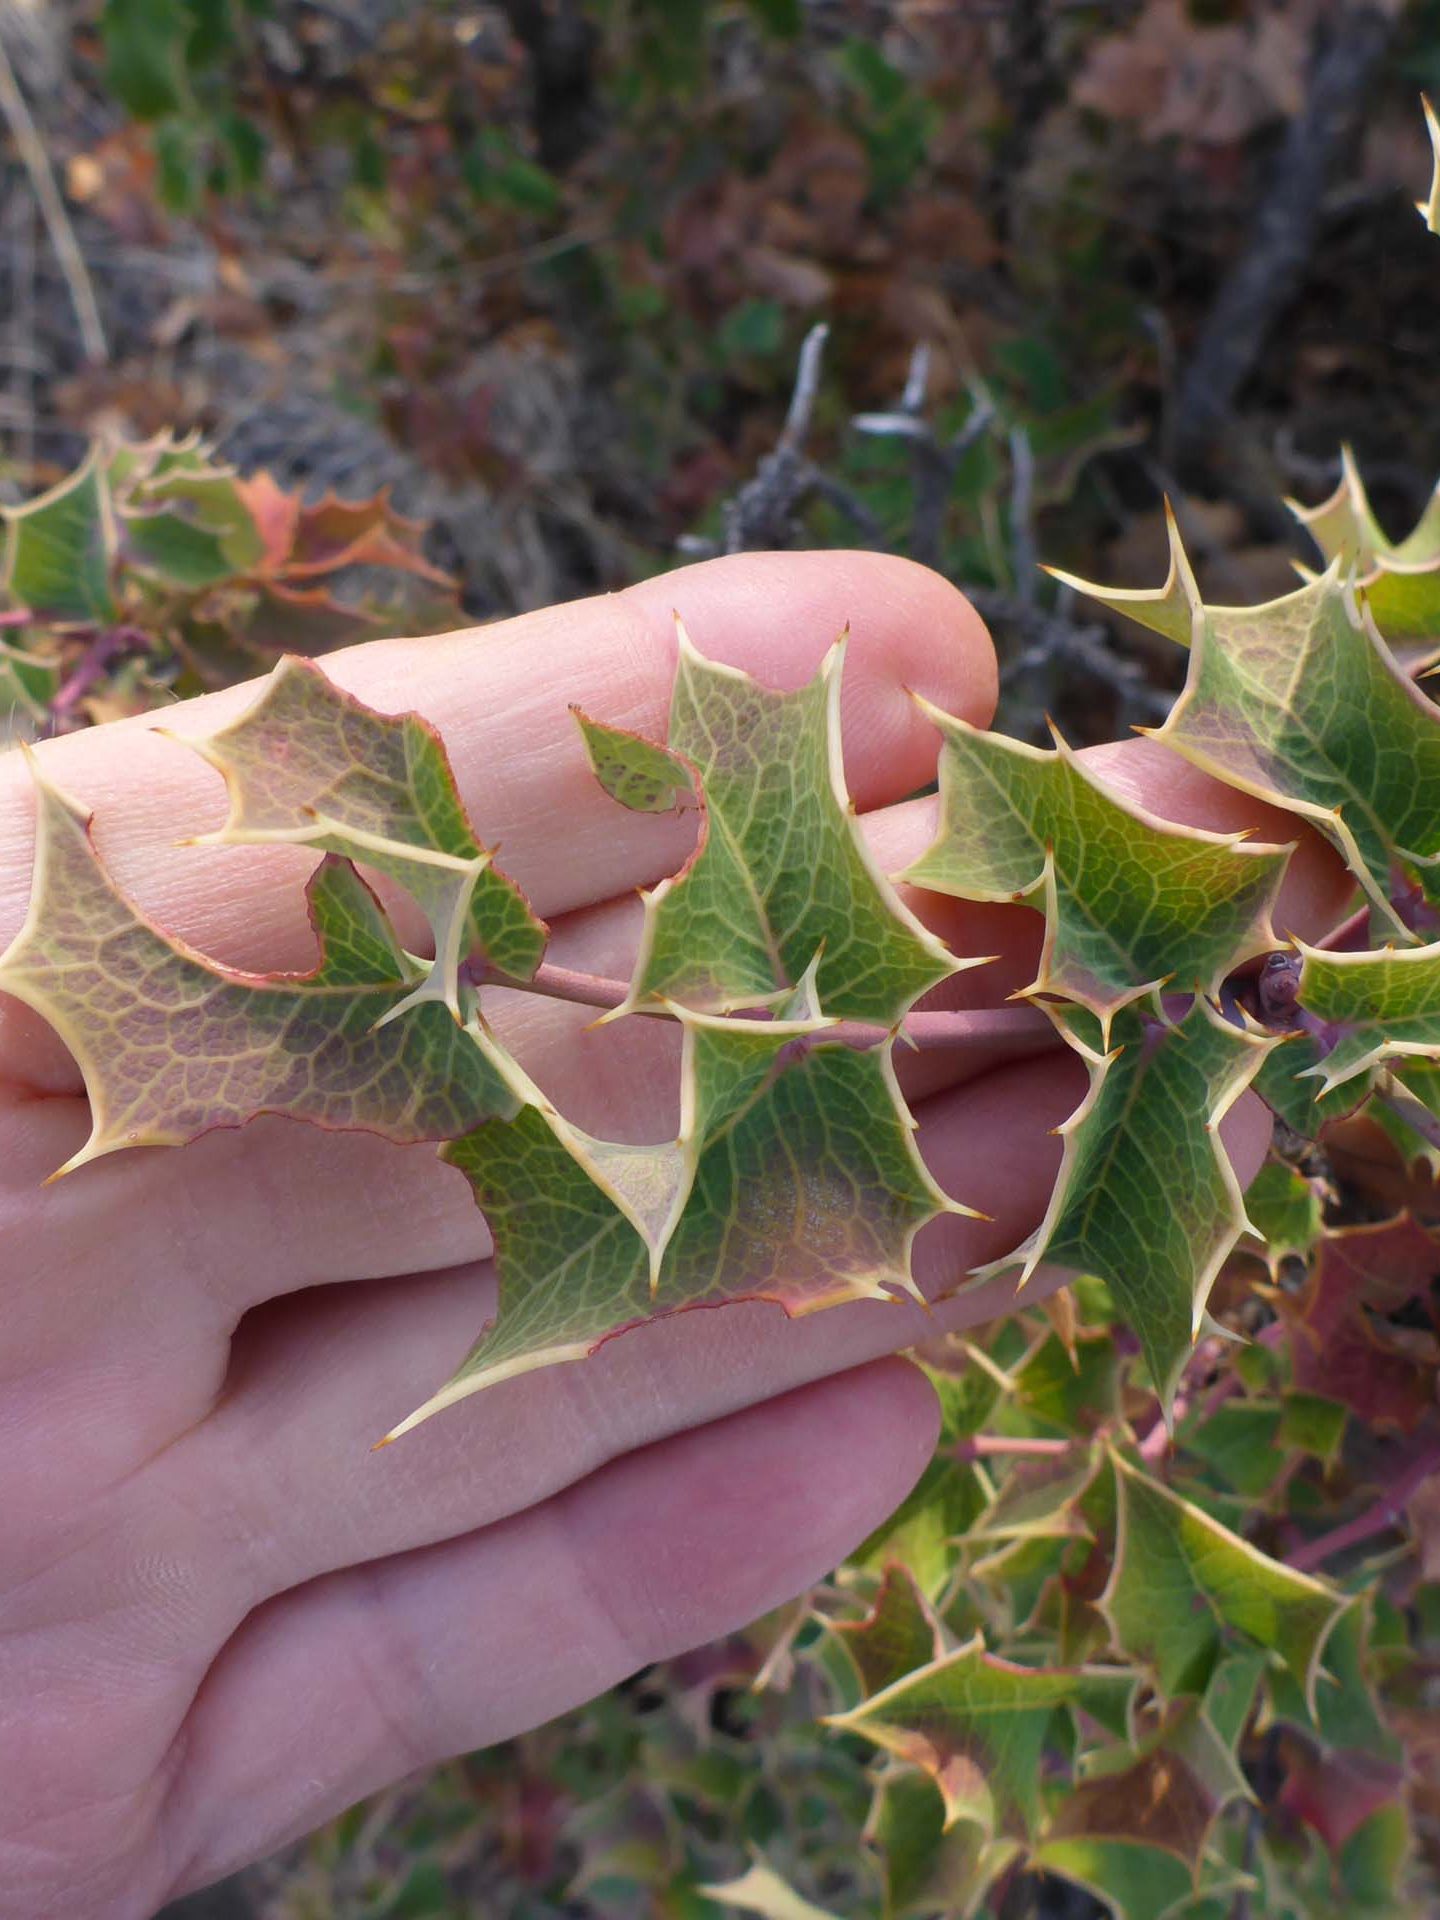 Closer look at Oregon grap leaf. D. Burk.